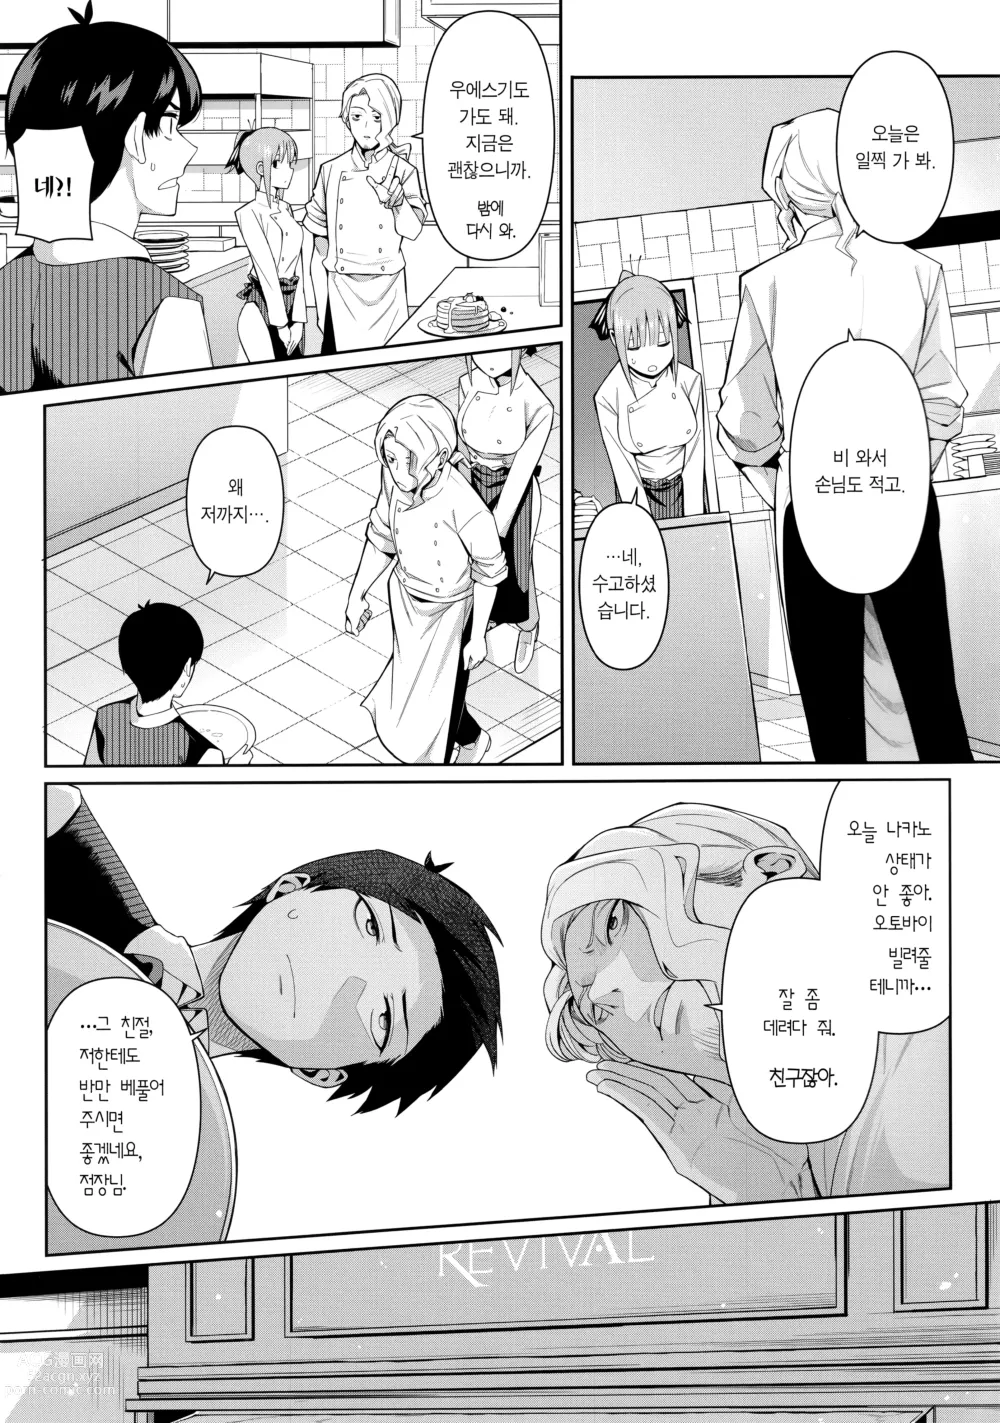 Page 4 of doujinshi 2등분의 유혹 (decensored)